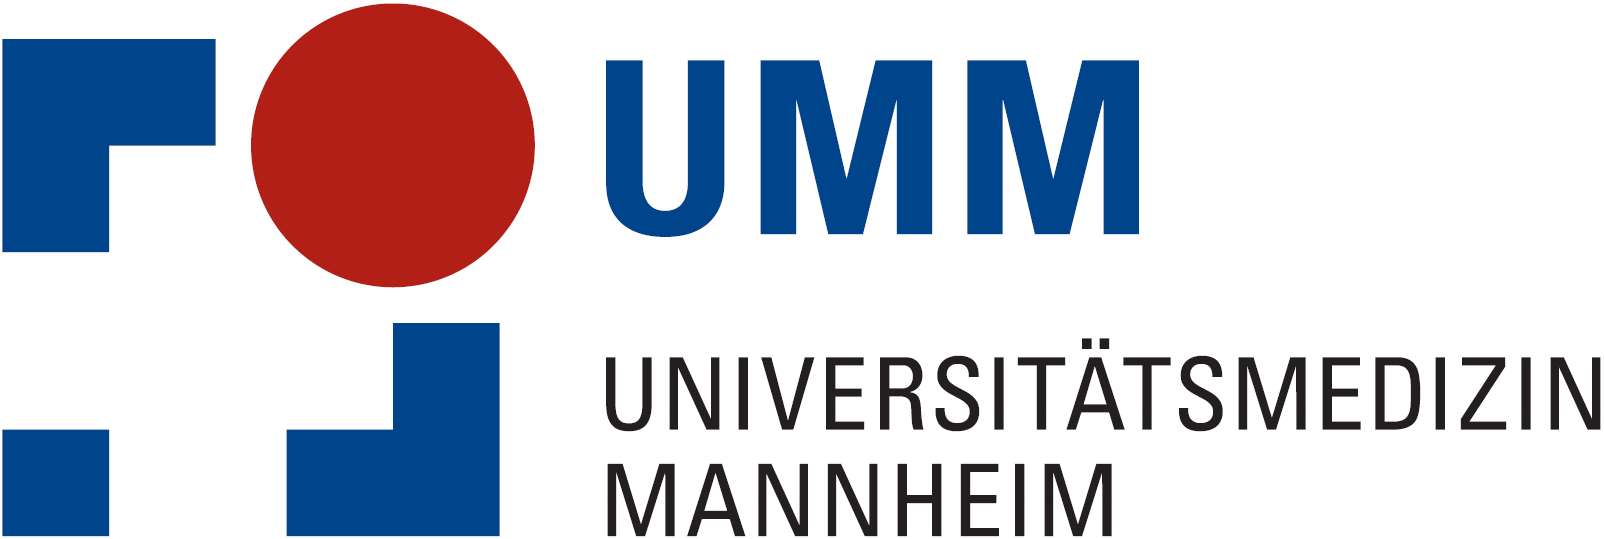 UMM Universitätsmedizin Mannheim